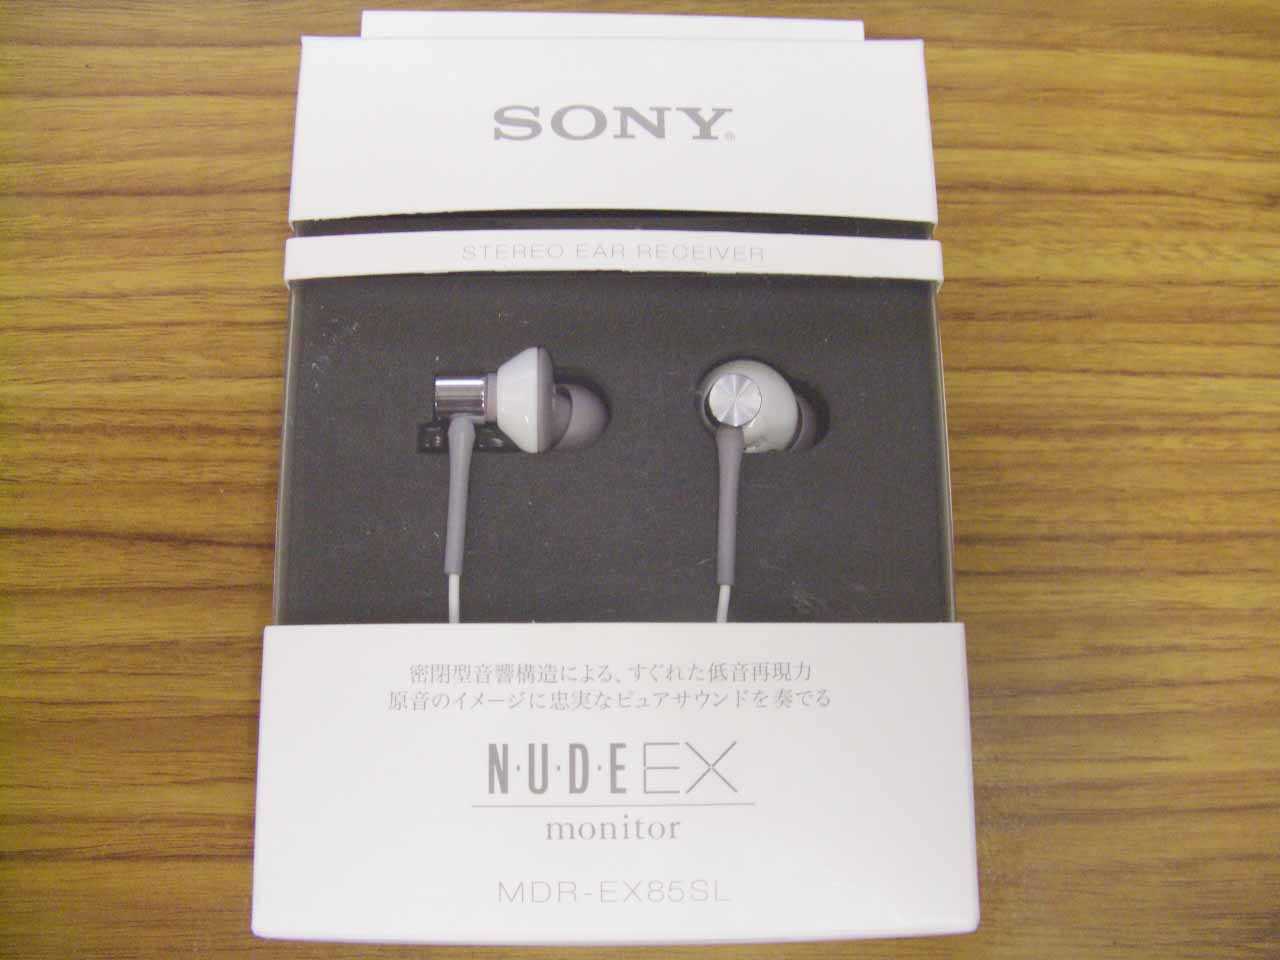 Sony mdr-ex700sl